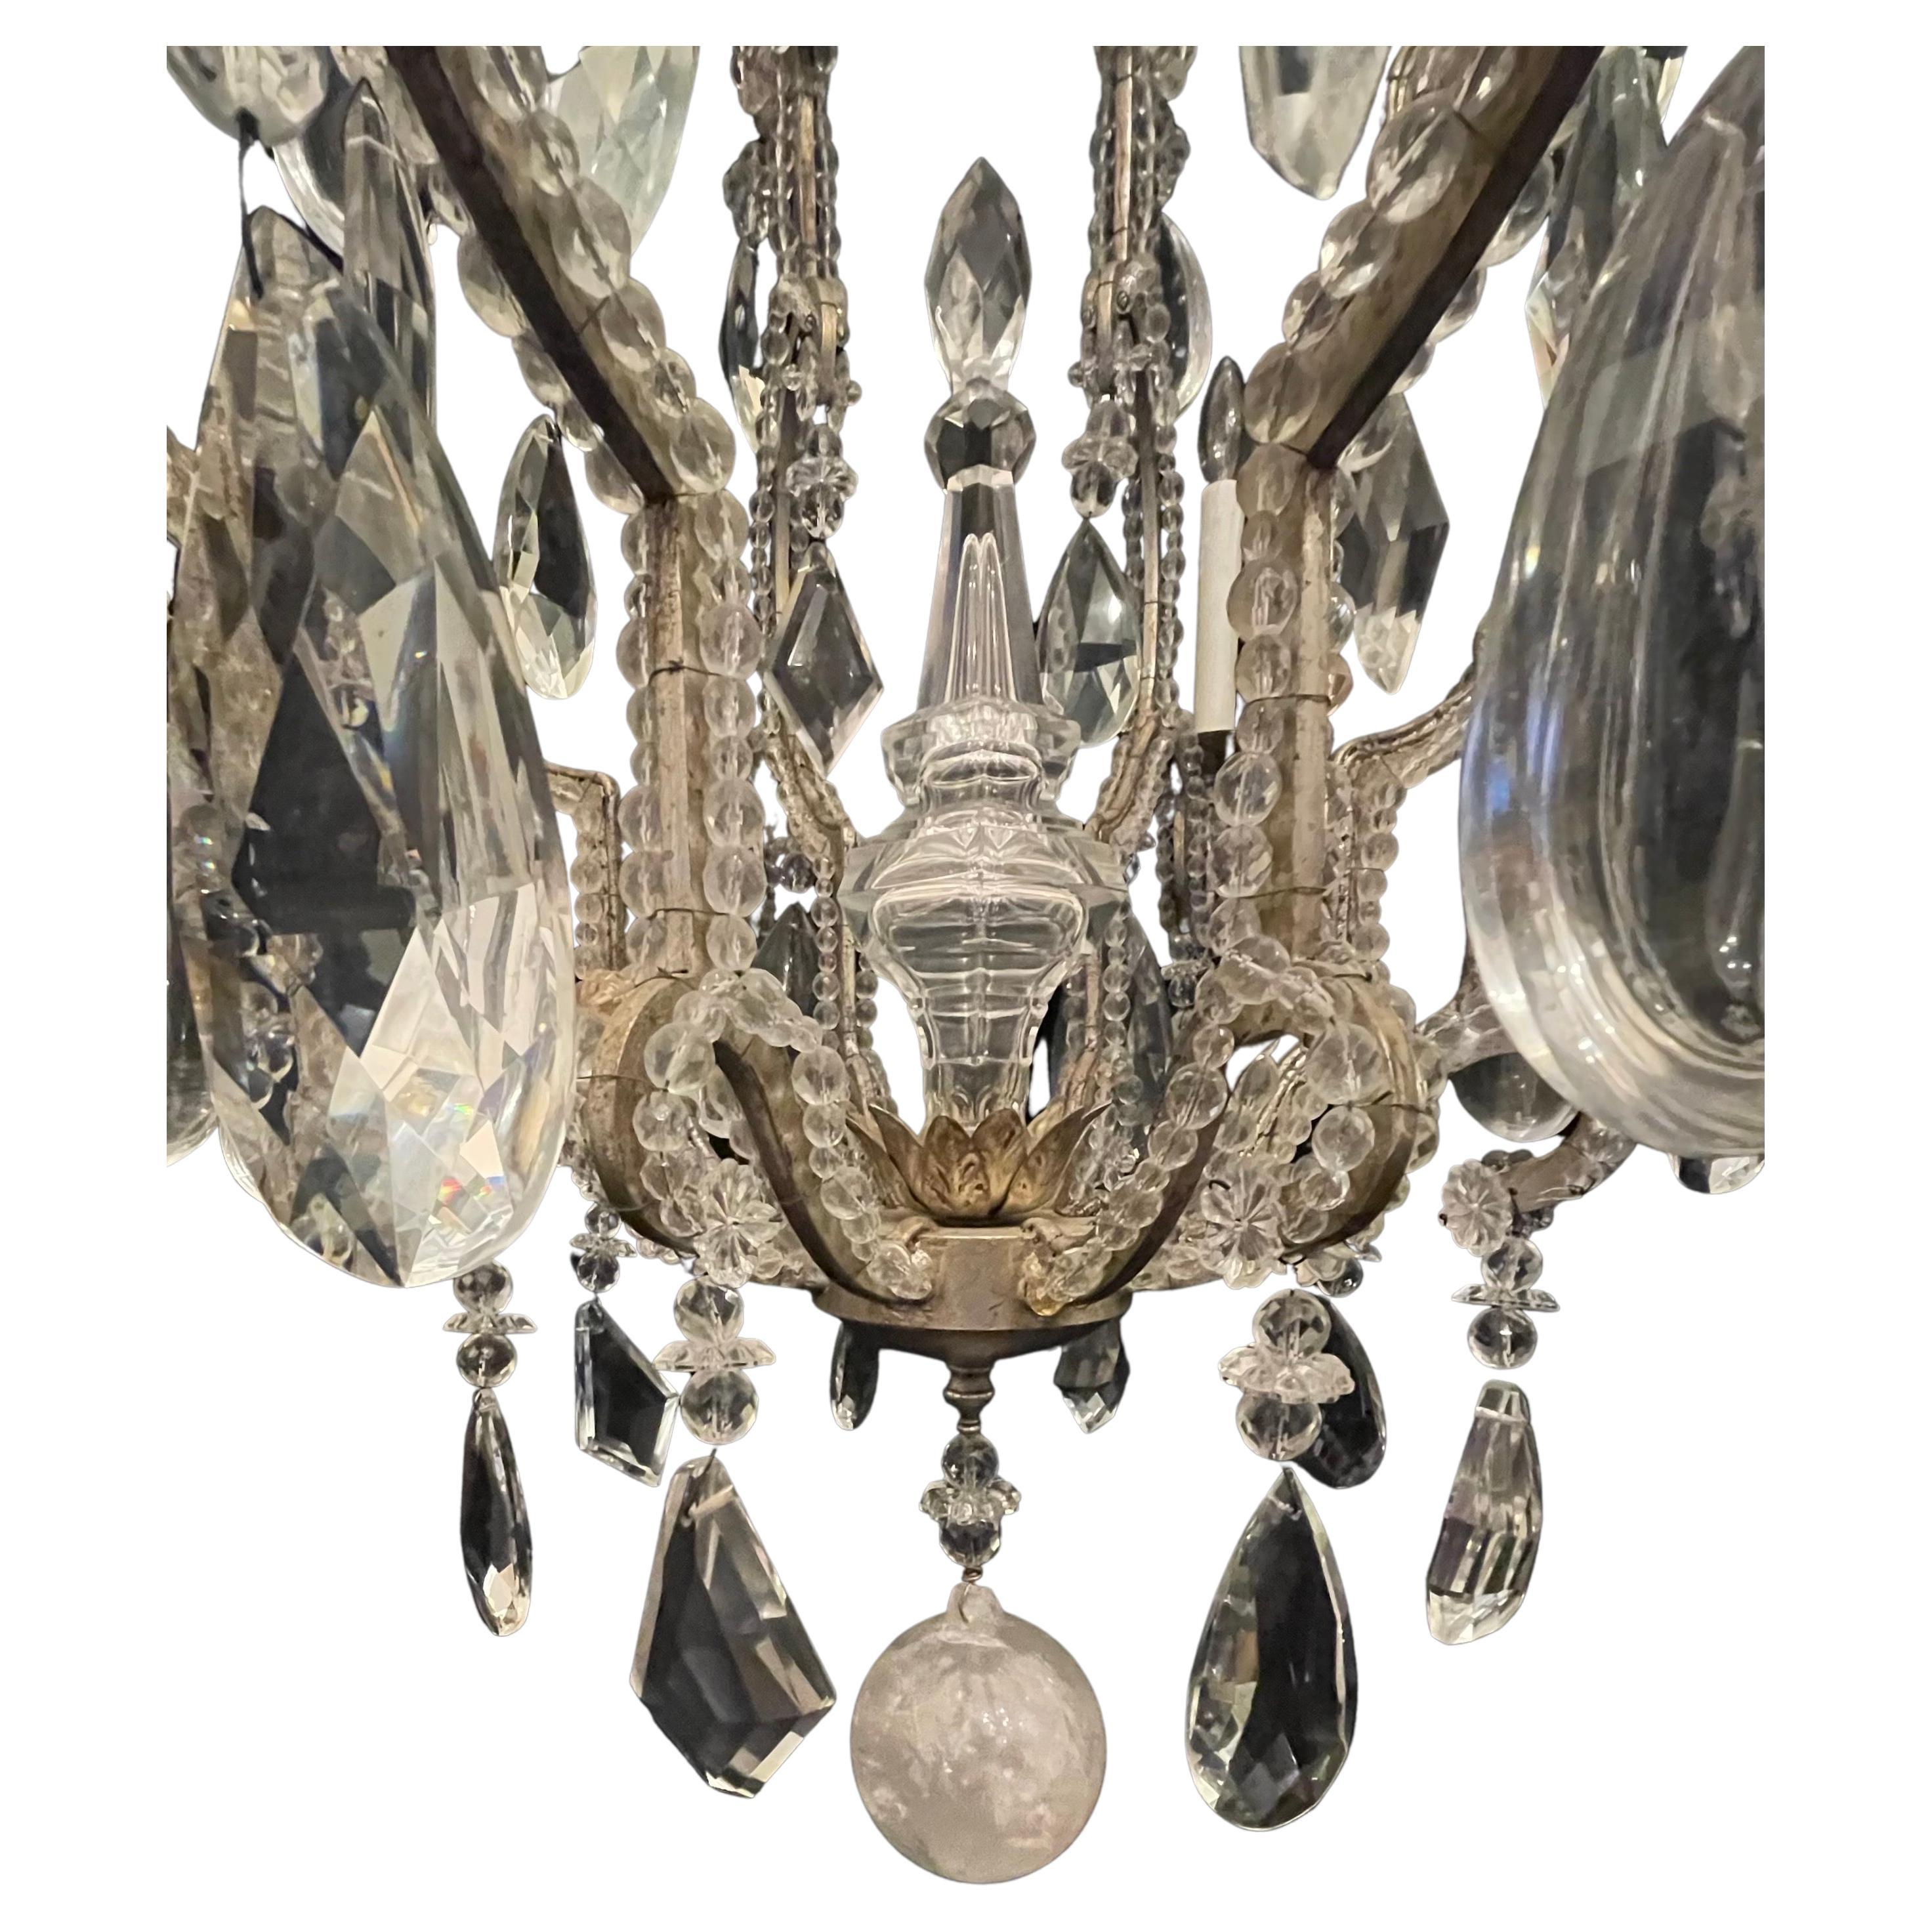 Eine wunderbare Mid-Century Modern Maison Baguès Style Silber vergoldet mit Perlen Französisch Vogelkäfig Form Körper mit abwechselnden Bergkristall und mehrdimensionale Kristalle durch aus, diese großen Kronleuchter hat 8 Kandelaber Lichter rund um